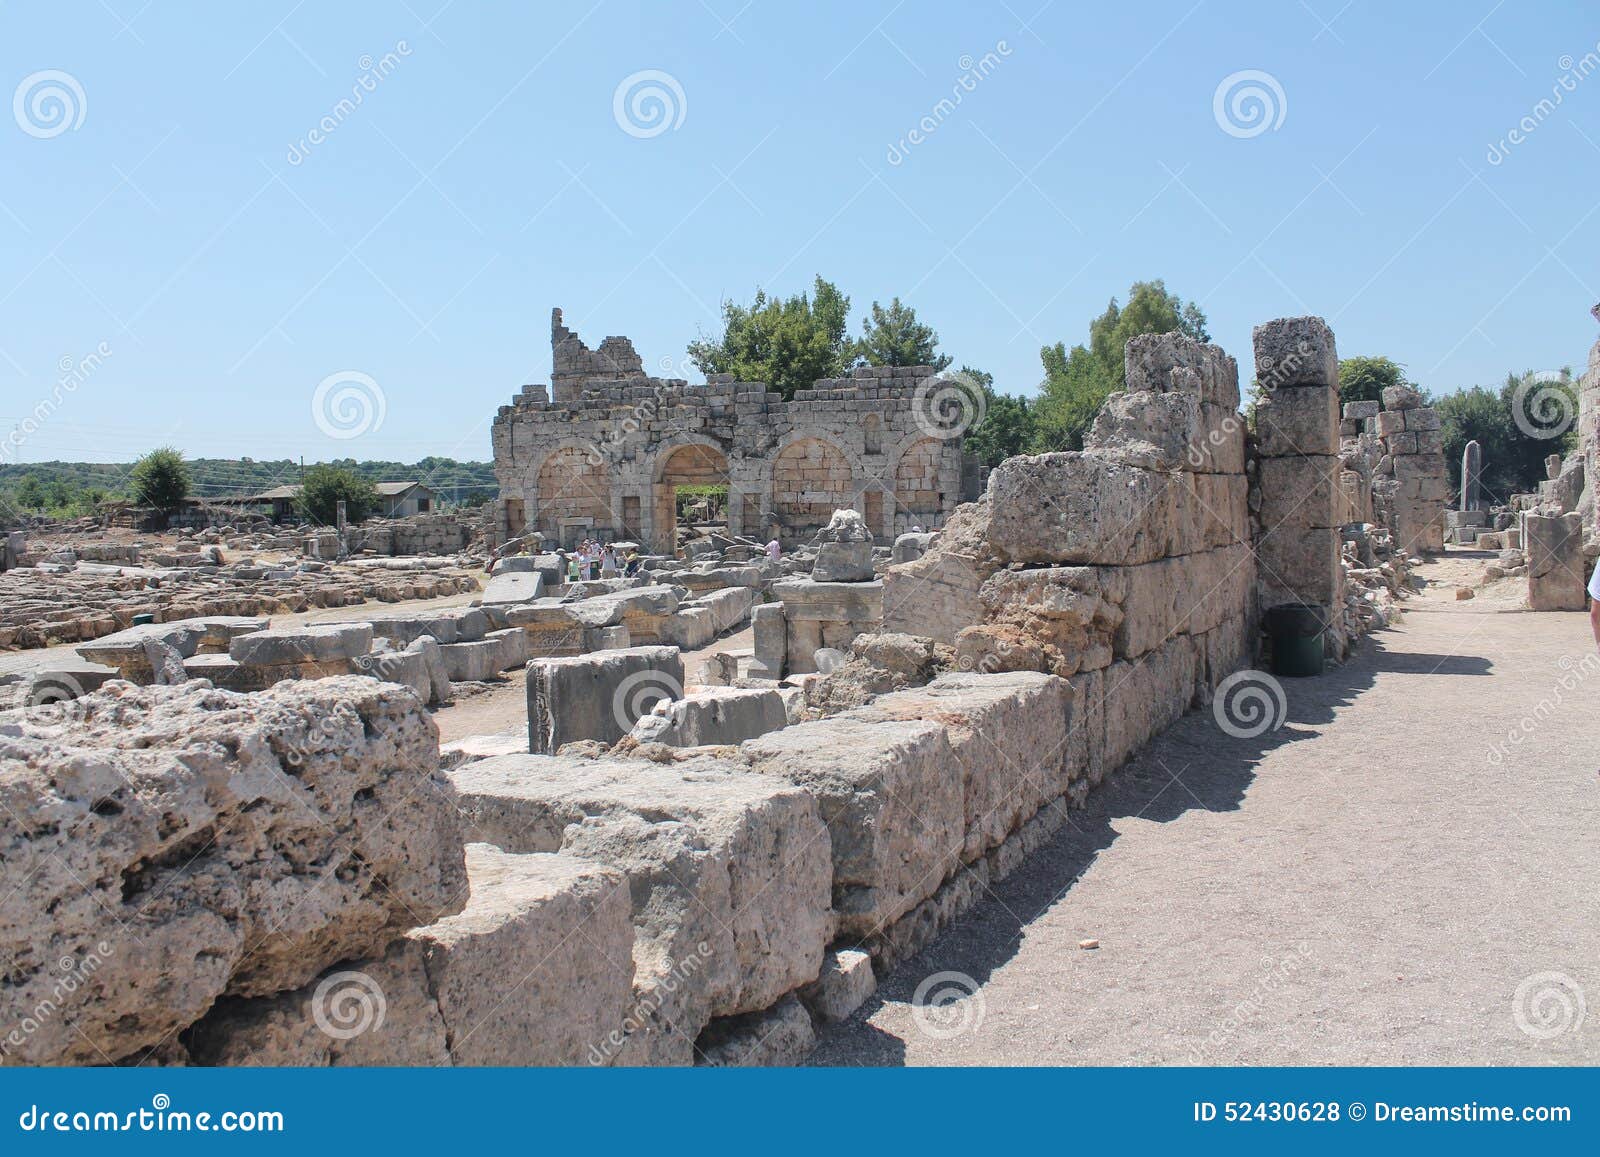 ruins stones antalia